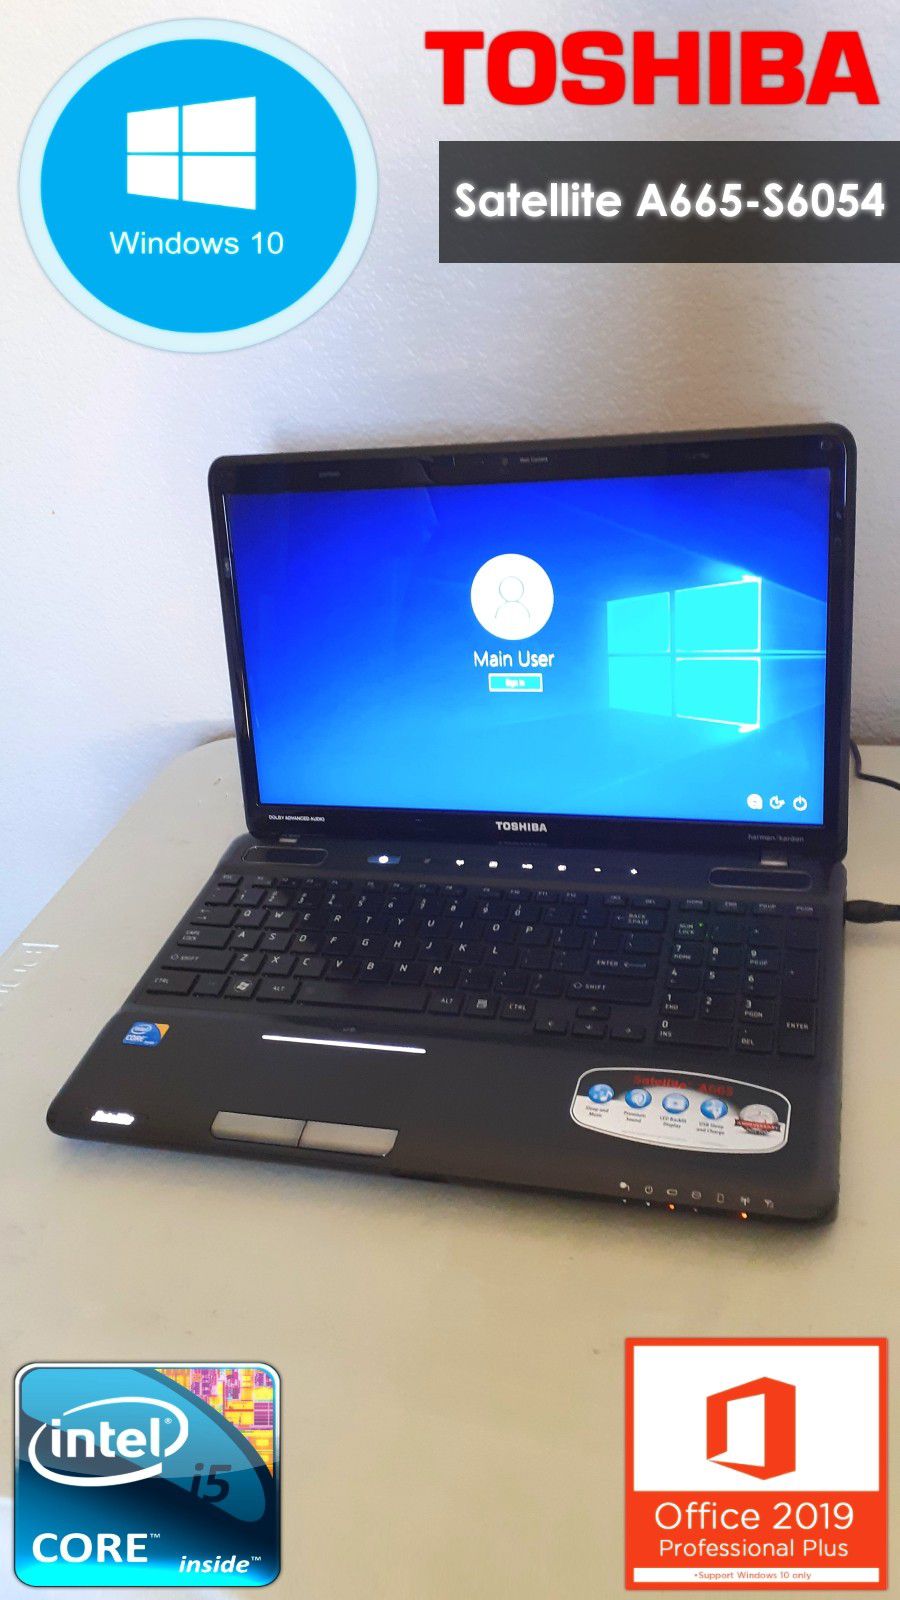 16" Toshiba Satellite A665 PC | Laptop Computer | Windows 10 Pro